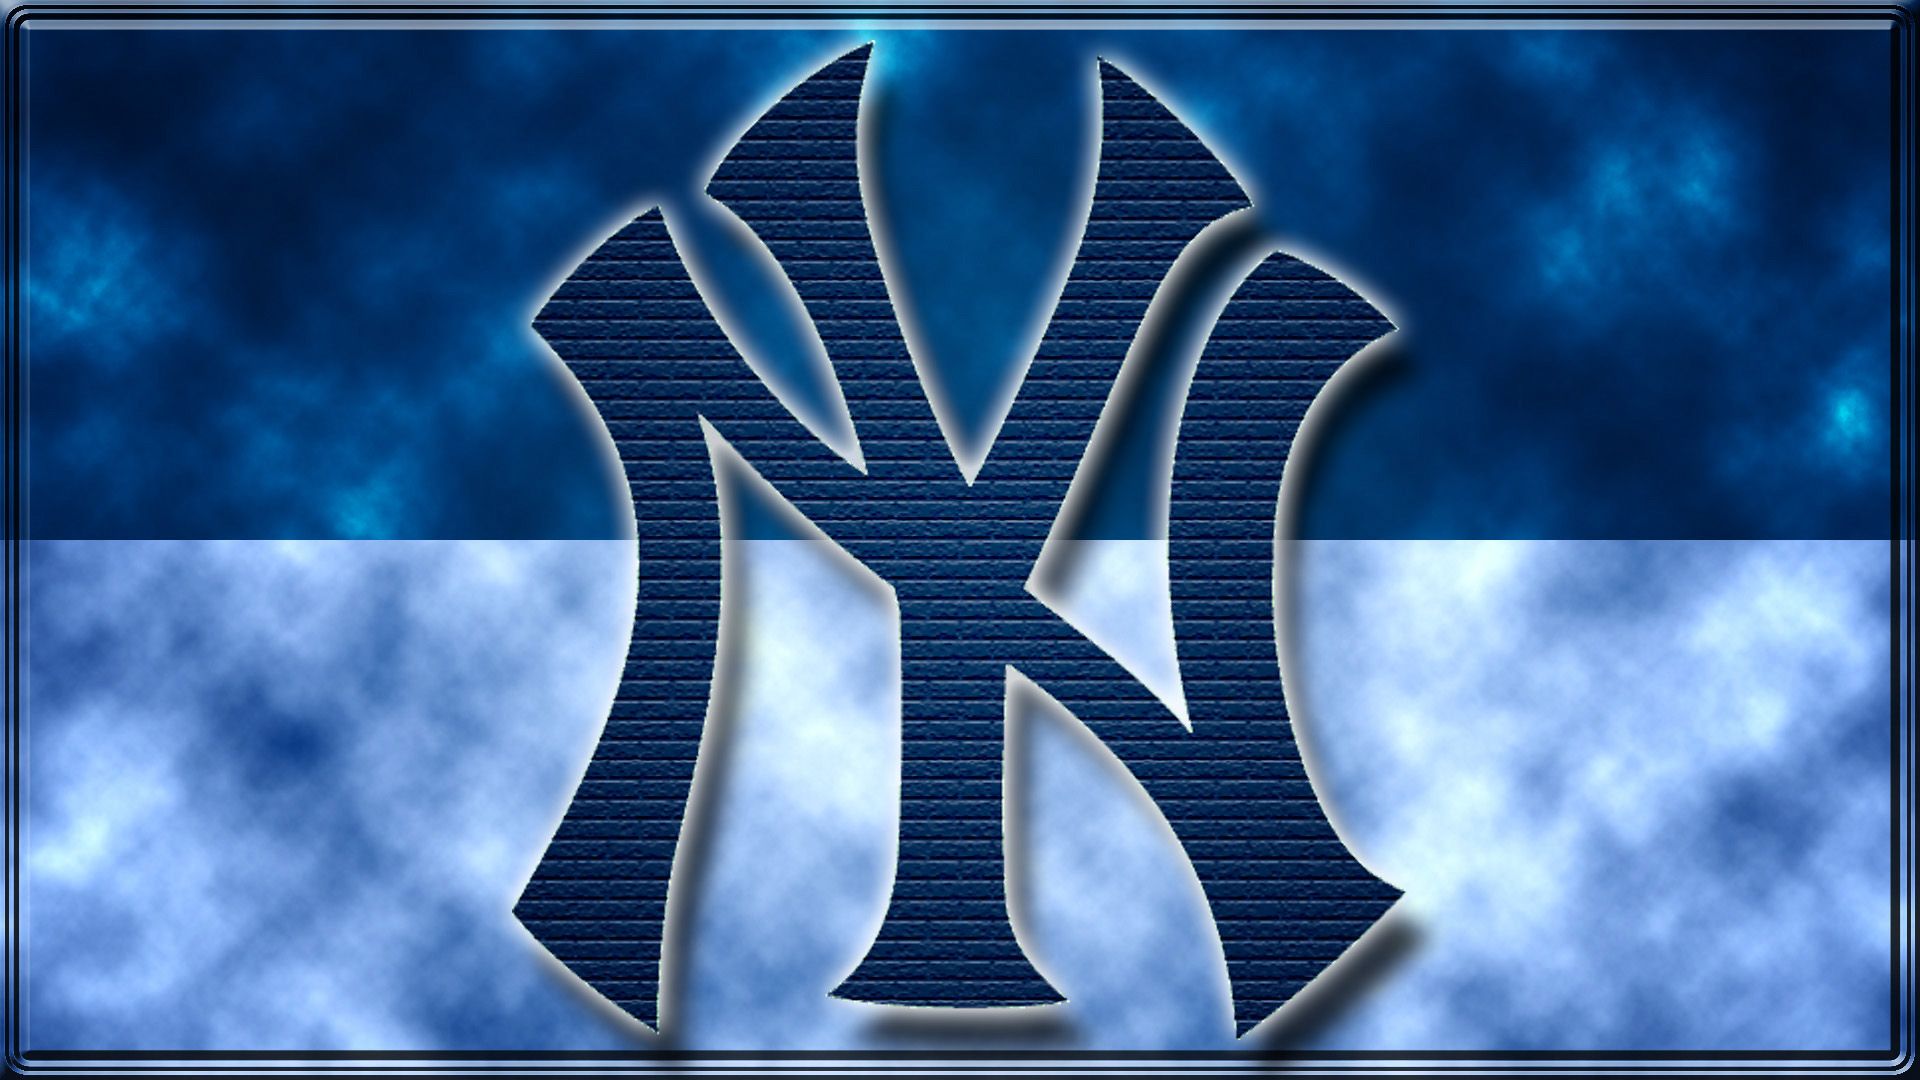 New York Yankees full hd image